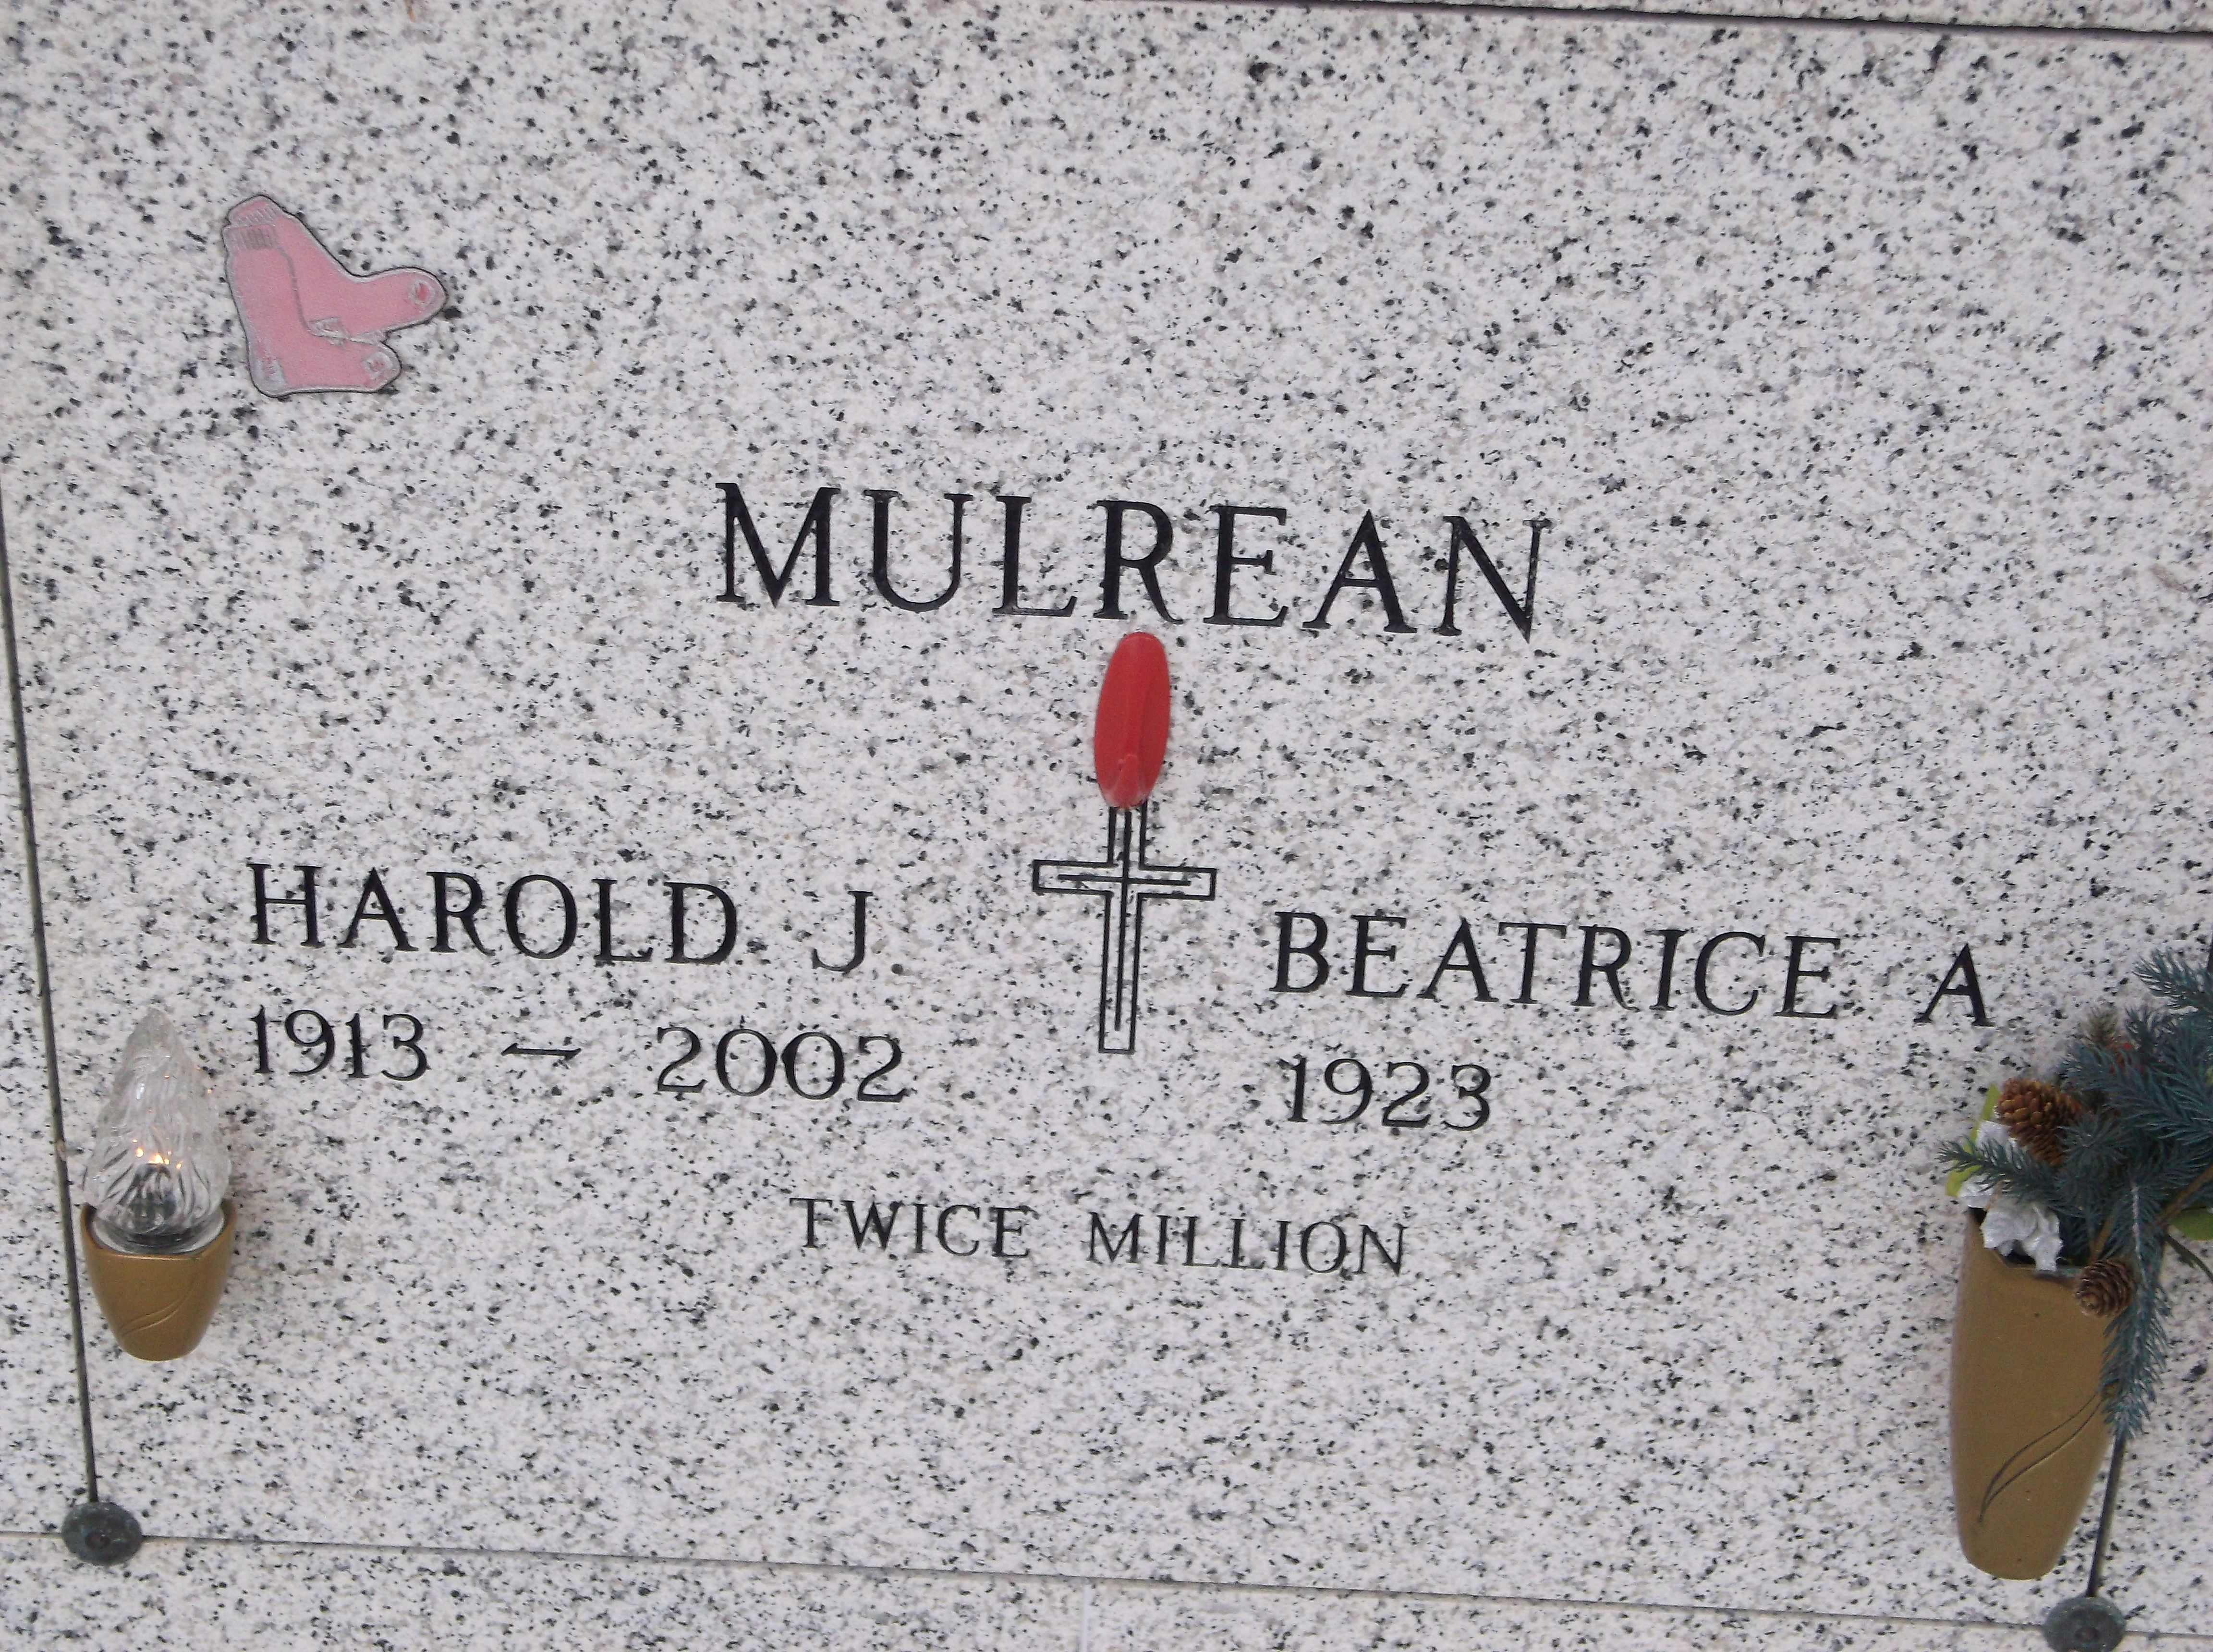 Beatrice A "Bea" Mulrean